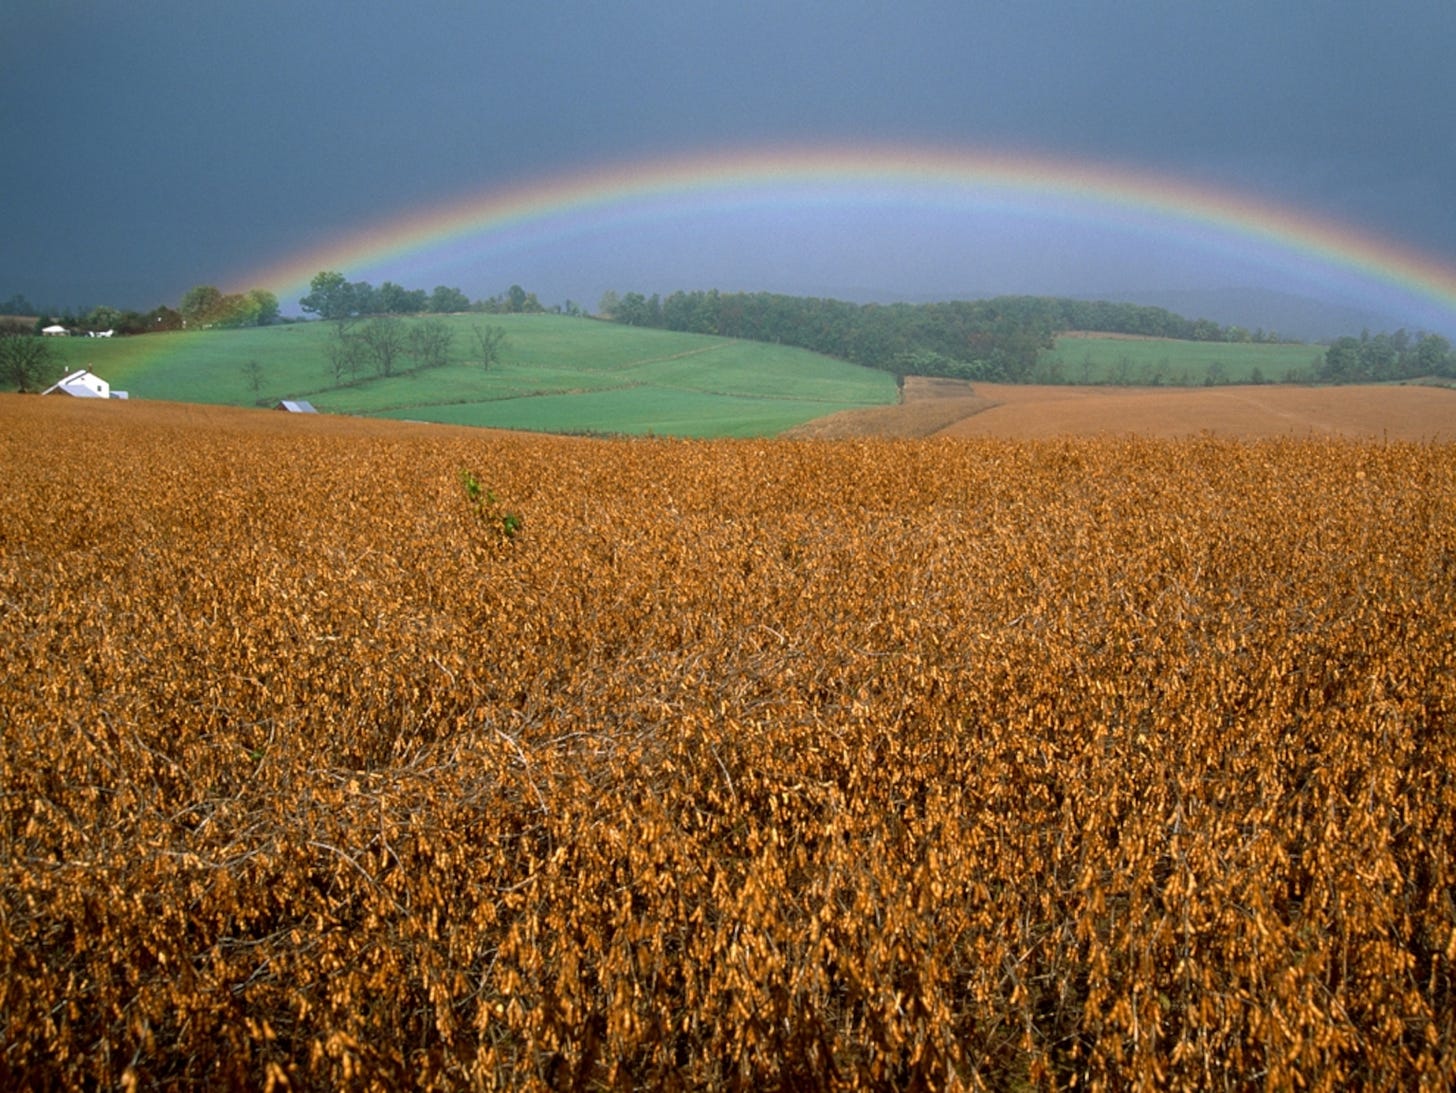 Rainbow over soybean field